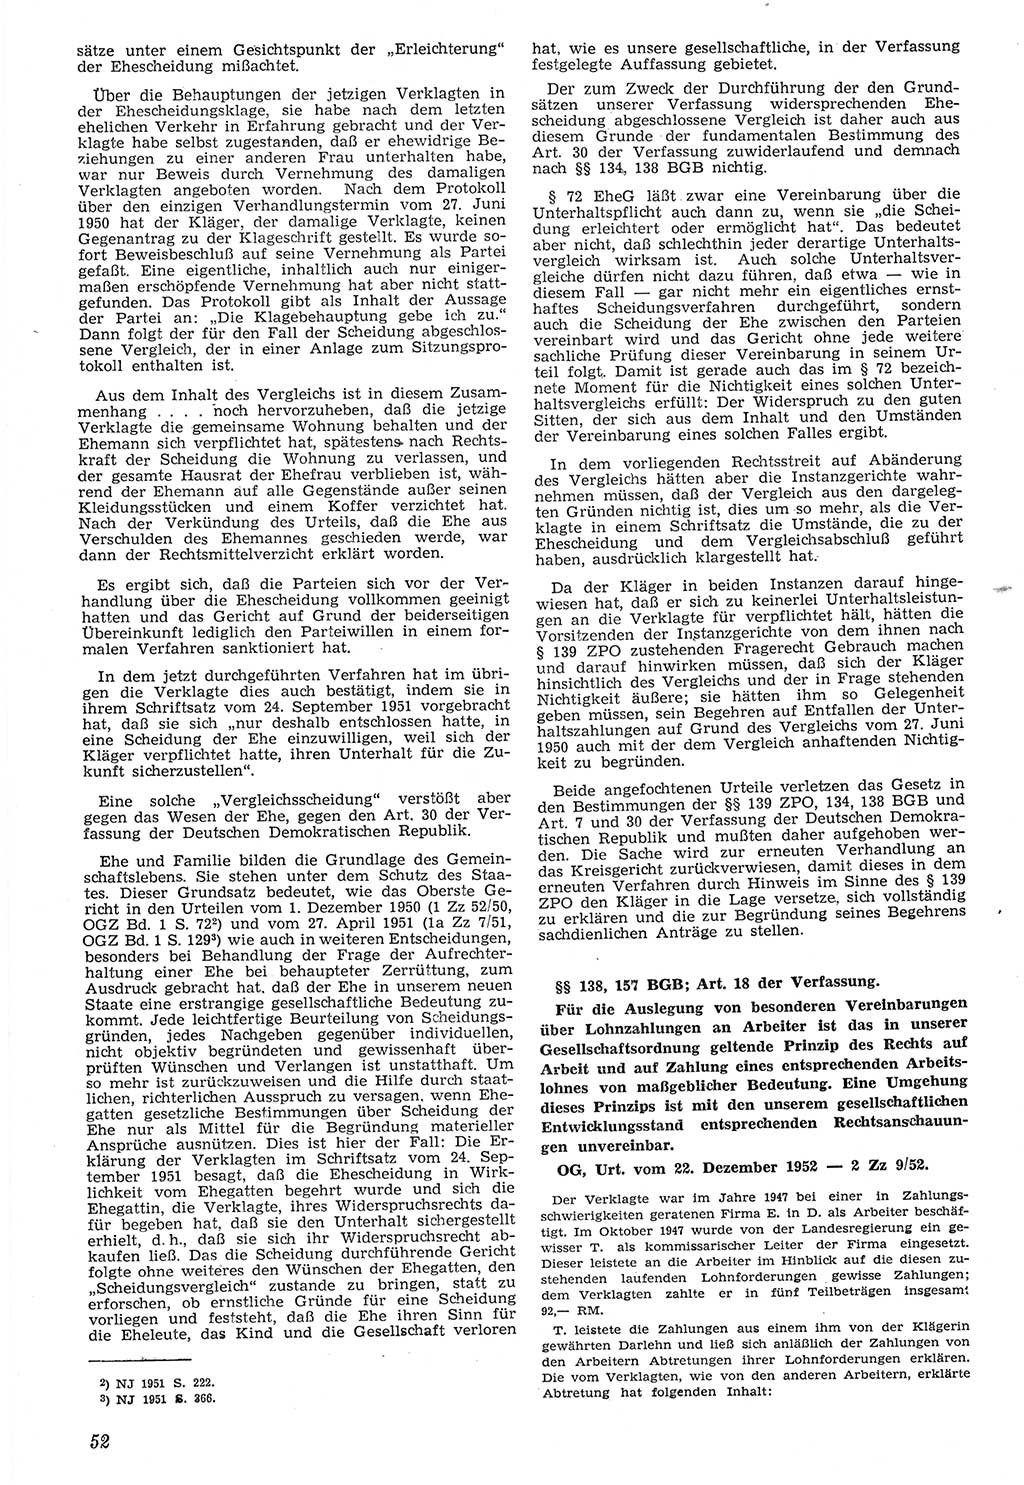 Neue Justiz (NJ), Zeitschrift für Recht und Rechtswissenschaft [Deutsche Demokratische Republik (DDR)], 7. Jahrgang 1953, Seite 52 (NJ DDR 1953, S. 52)